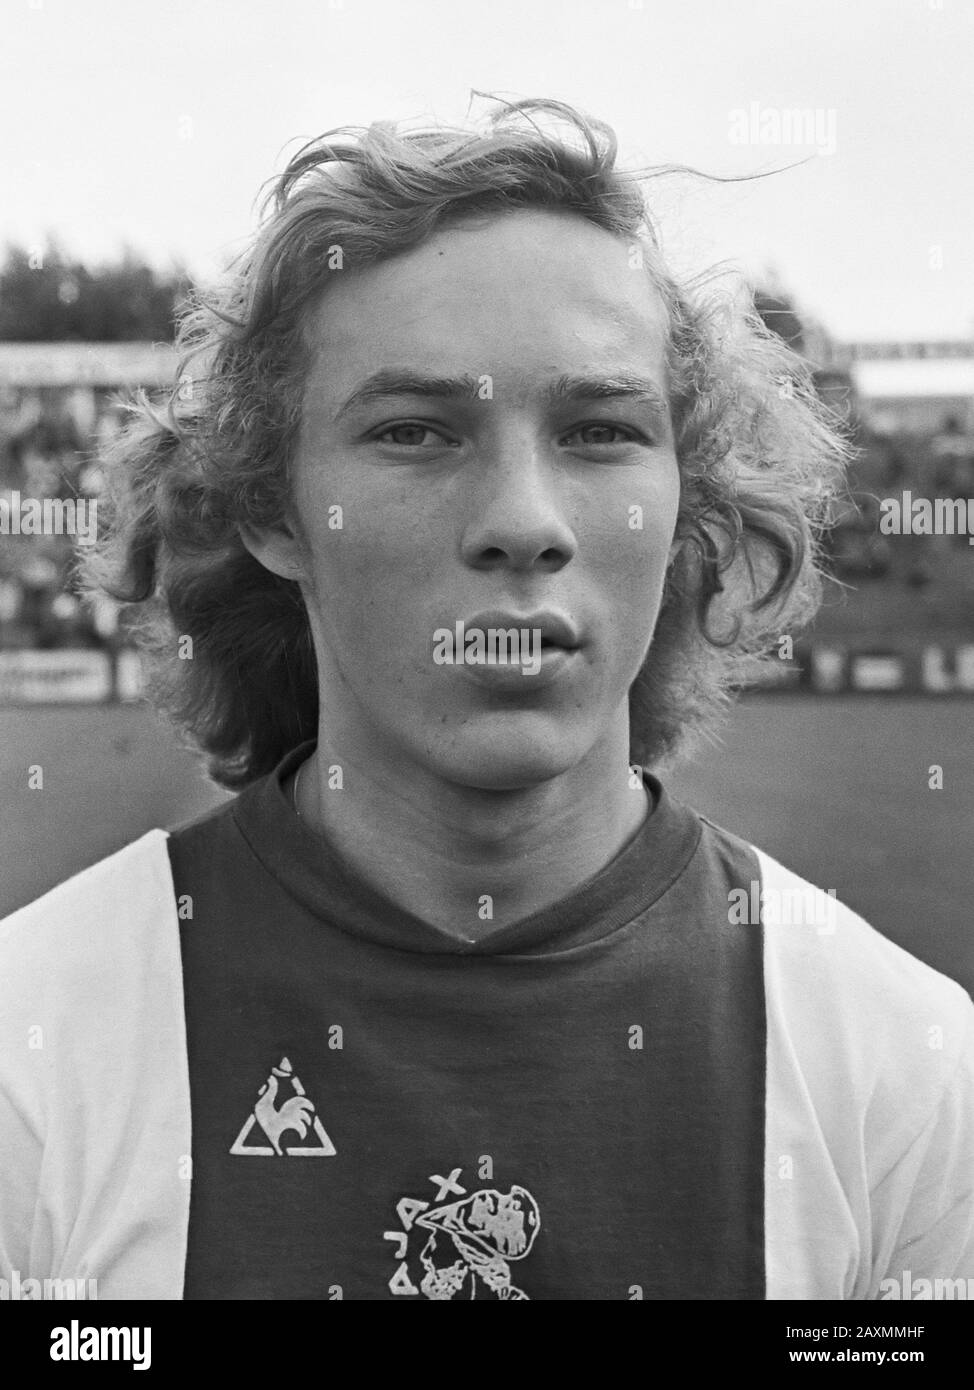 AJAX contra el juego de exposición Hertha BSC 3-1; Henk van Santen 25 de agosto de 1974 Foto de stock